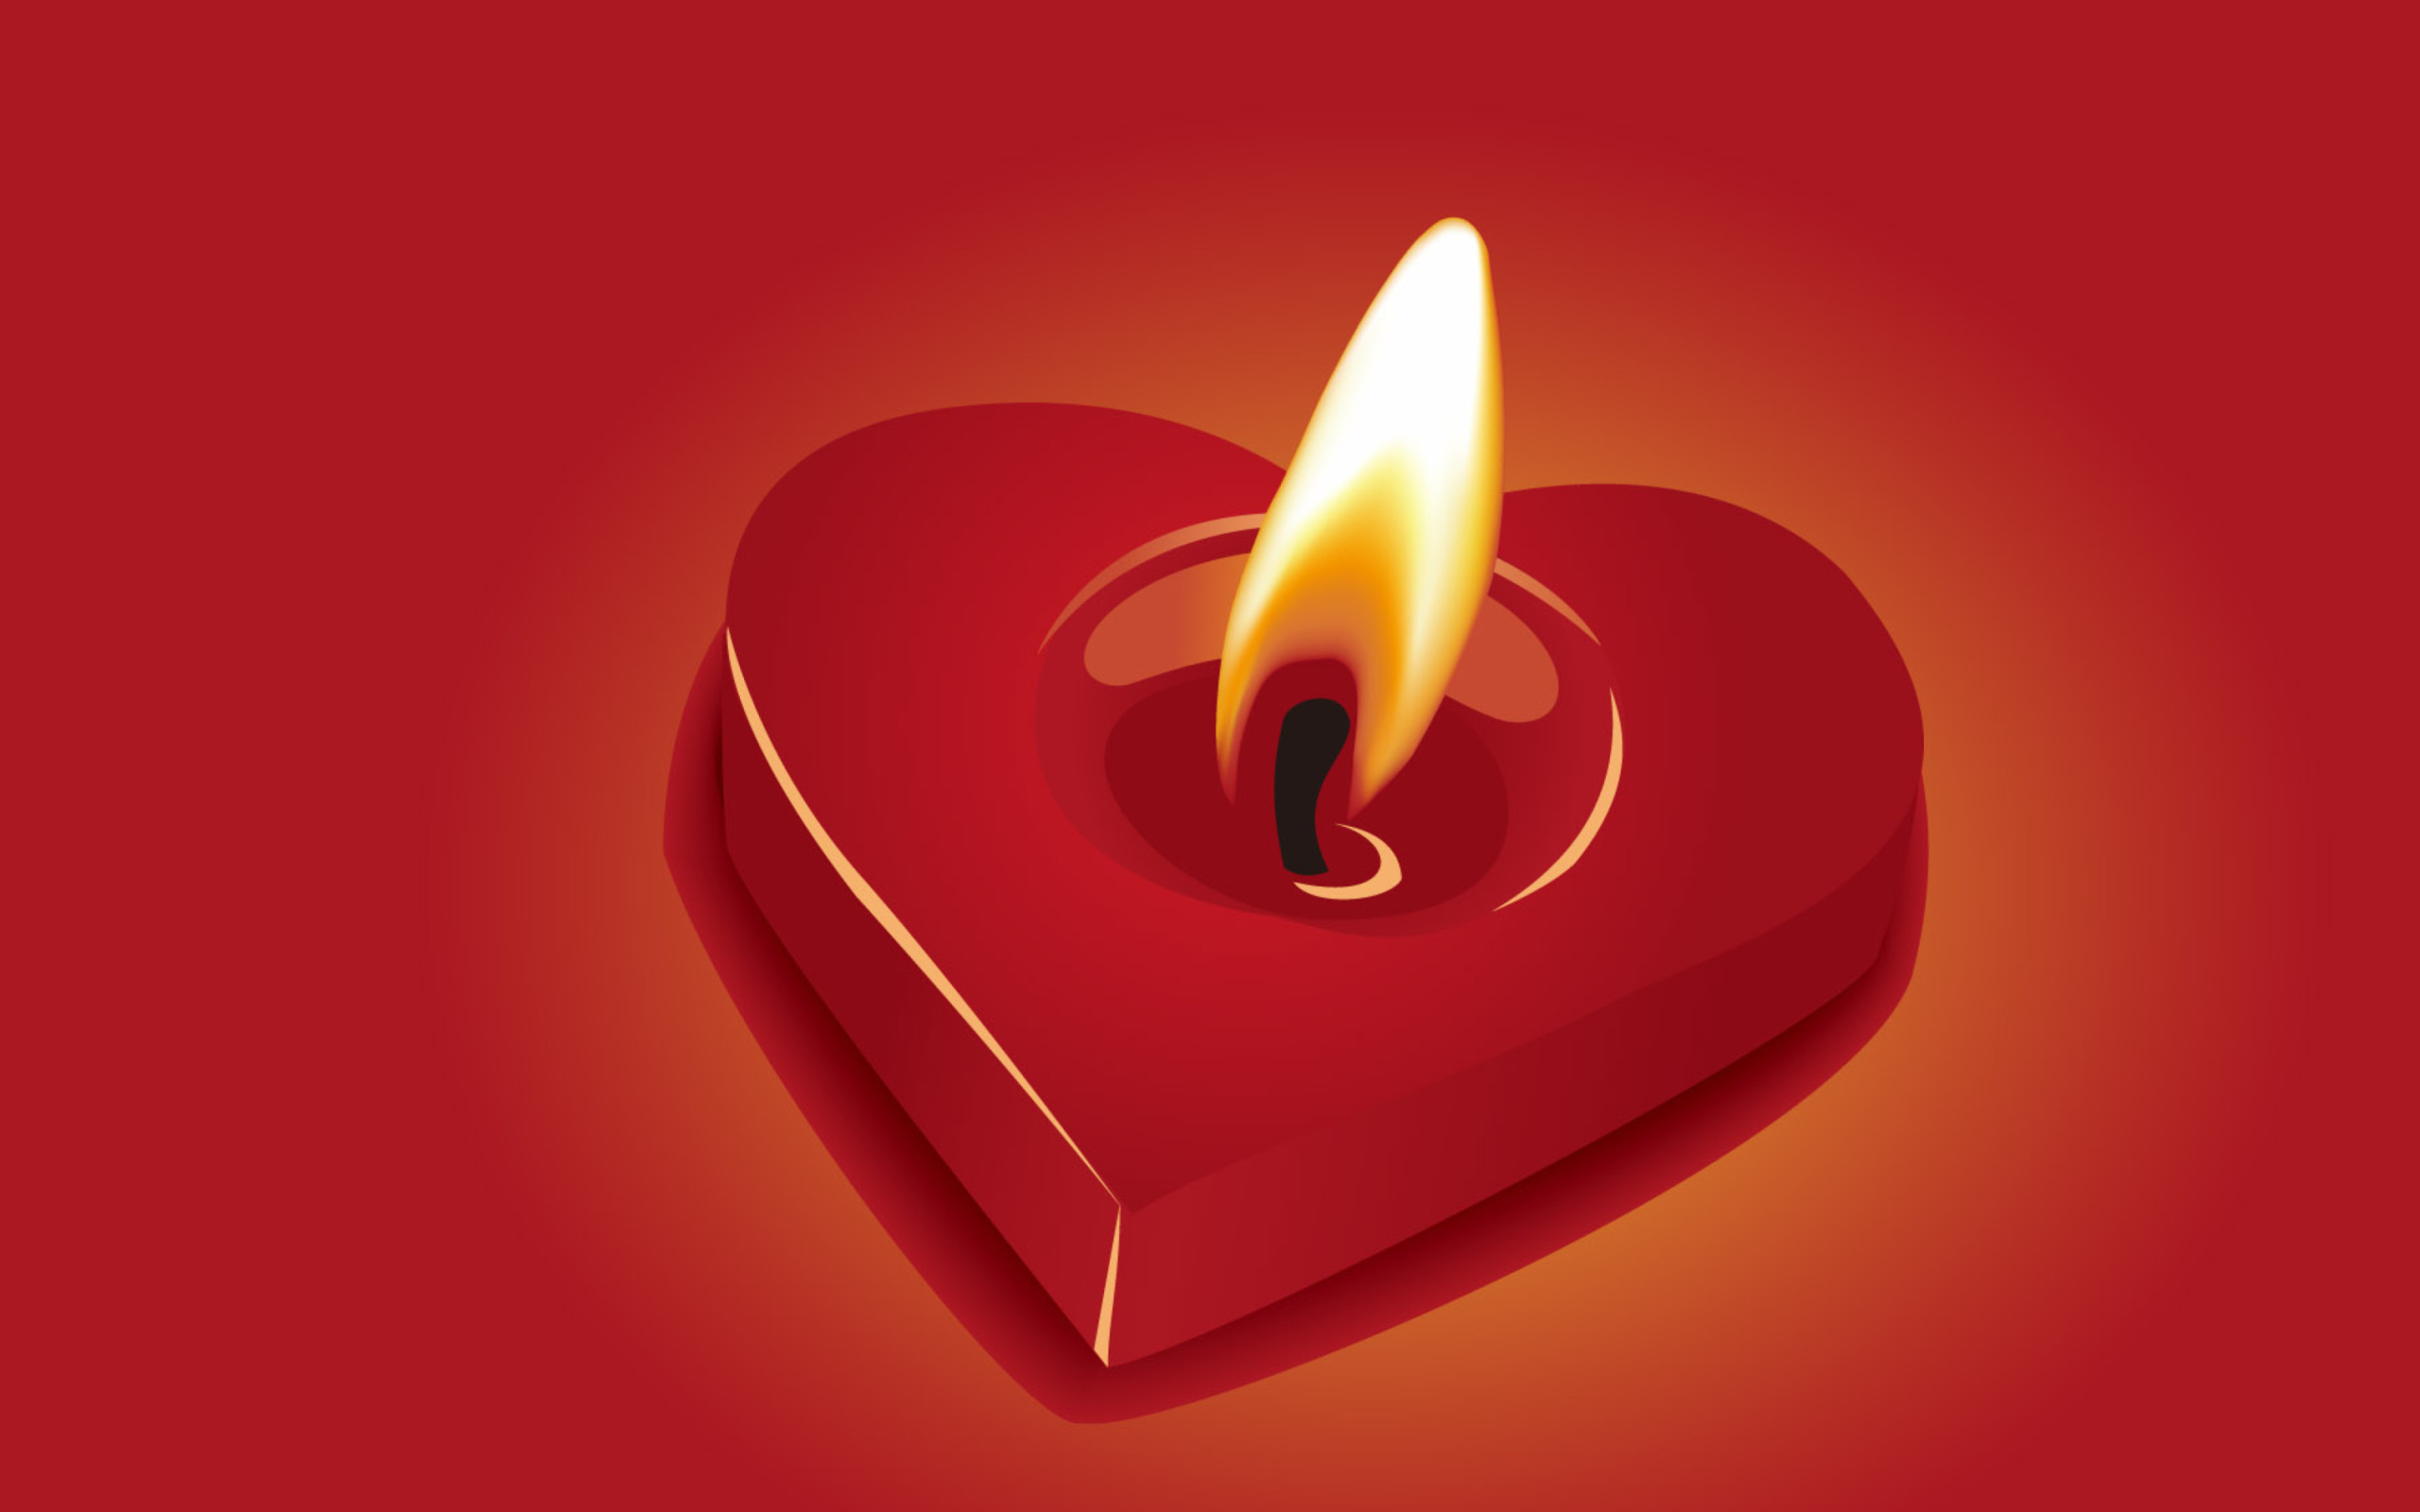 Обои Heart Shaped Candle 2560x1600